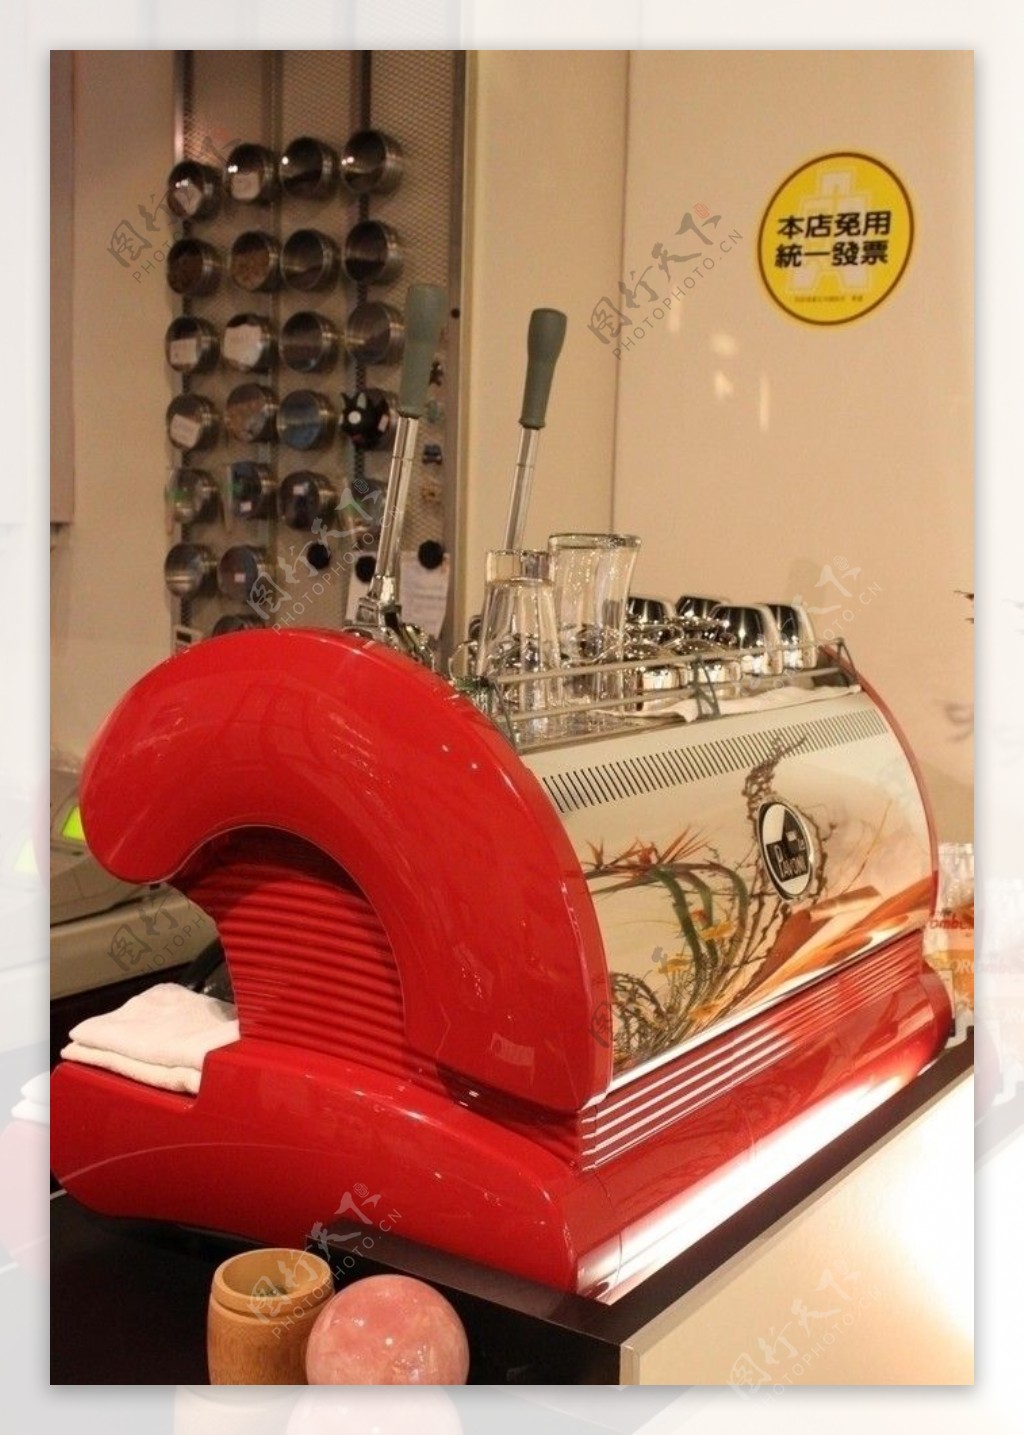 卡布里机械式咖啡机图片